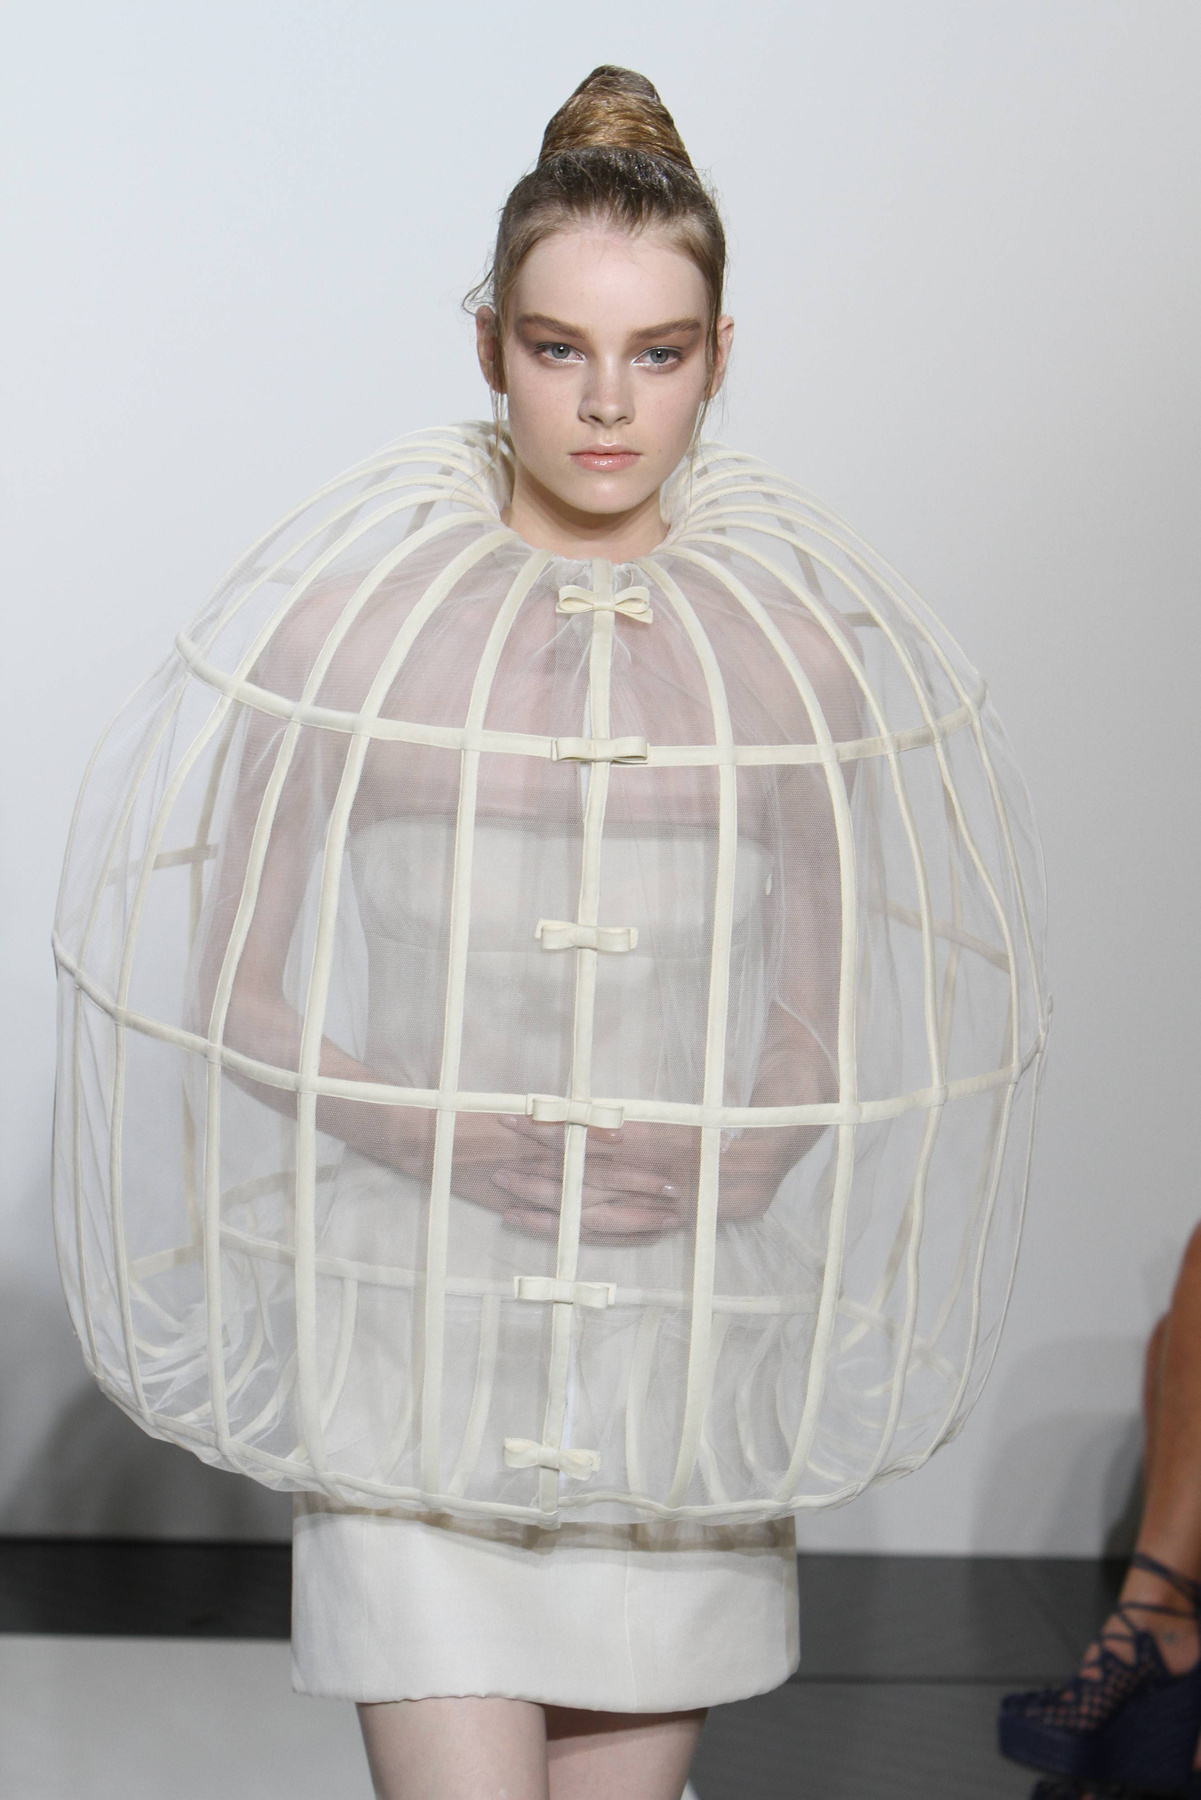 Abroncsruhás modell a Dolce & Gabbana 2013-as tavaszi bemutatóján.


